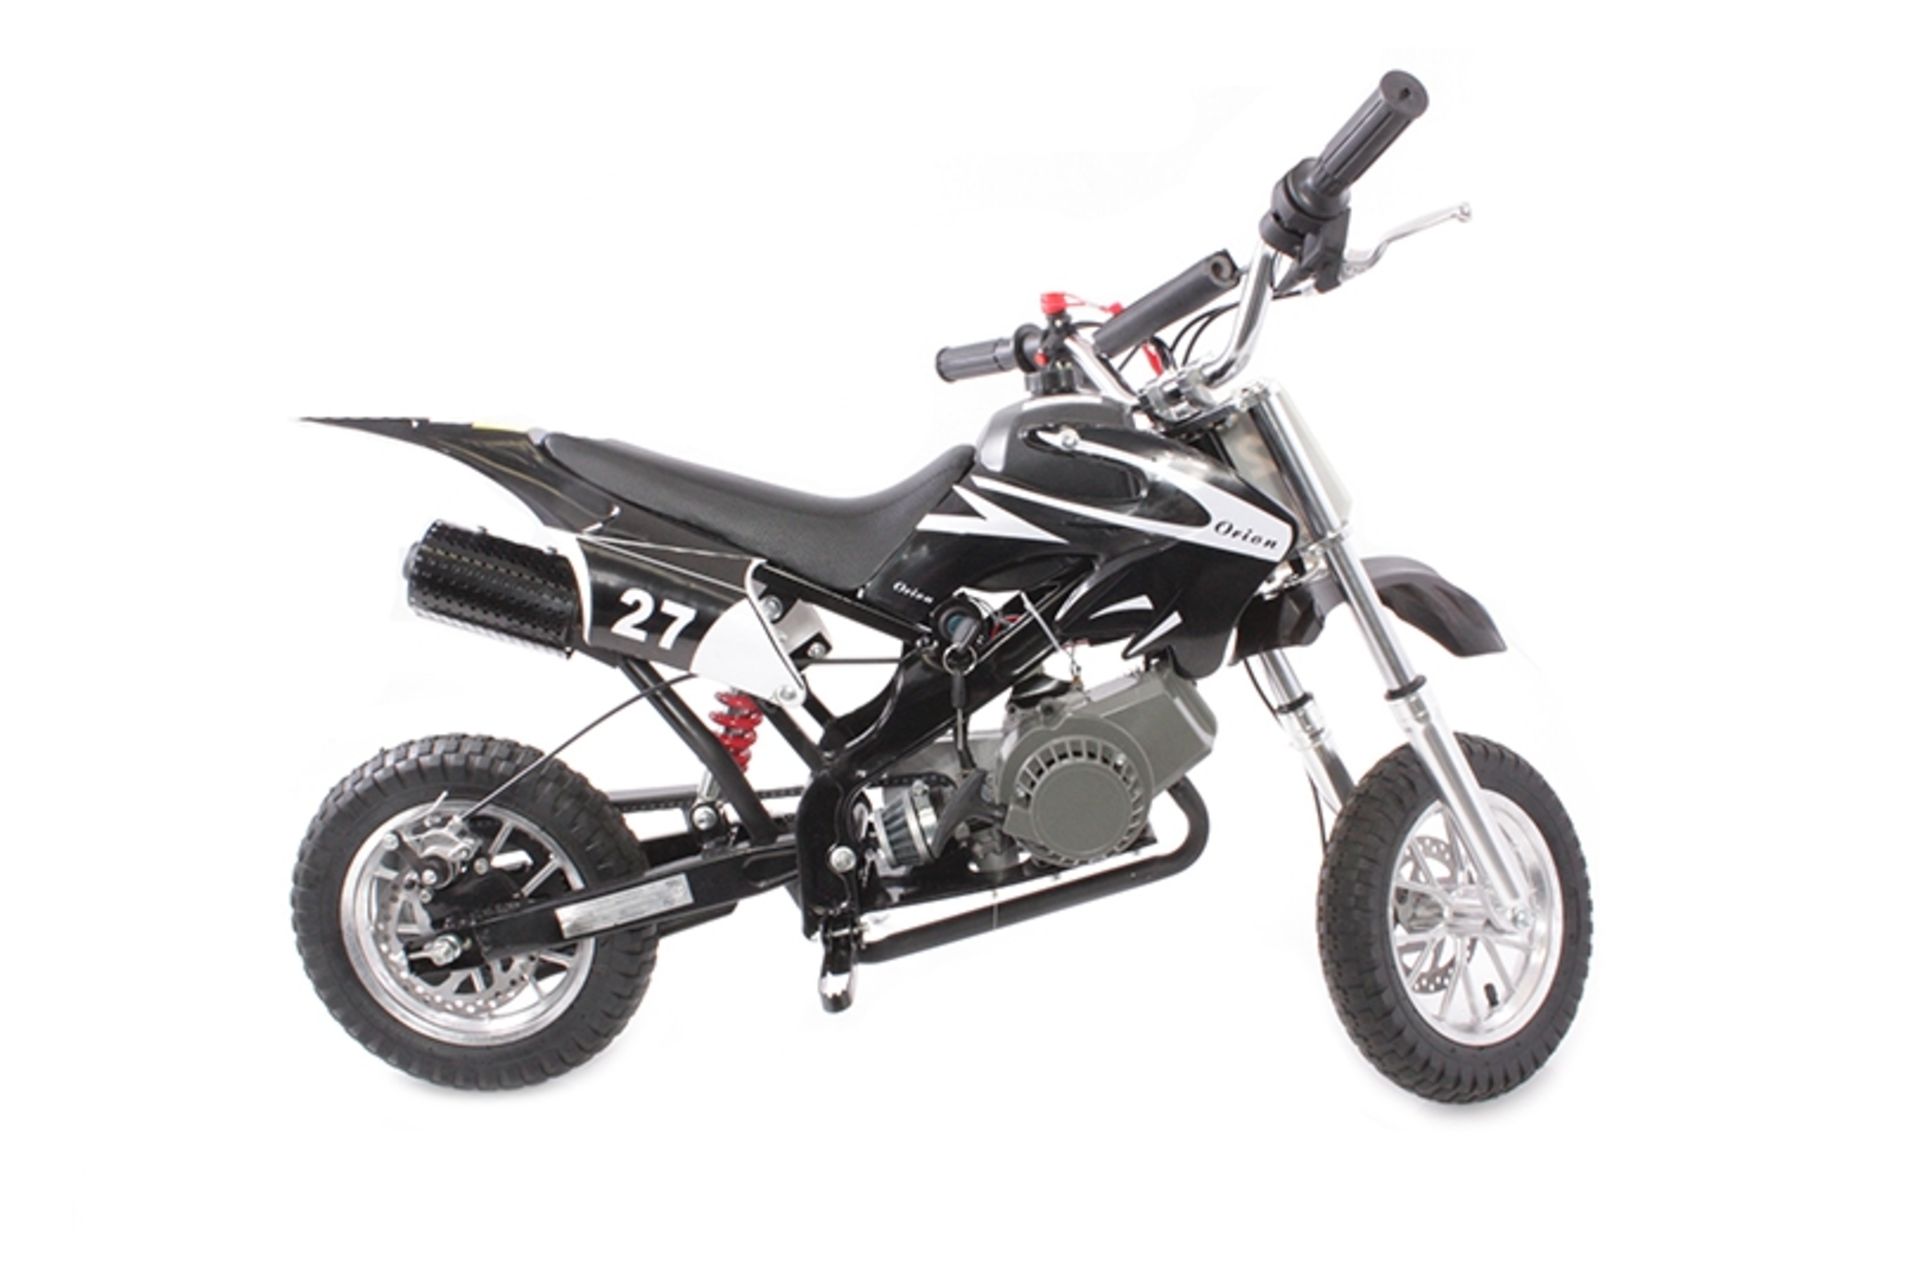 New Boxed 49cc Pocket Rocket Scrambler Kids Dirt Bike, white/black